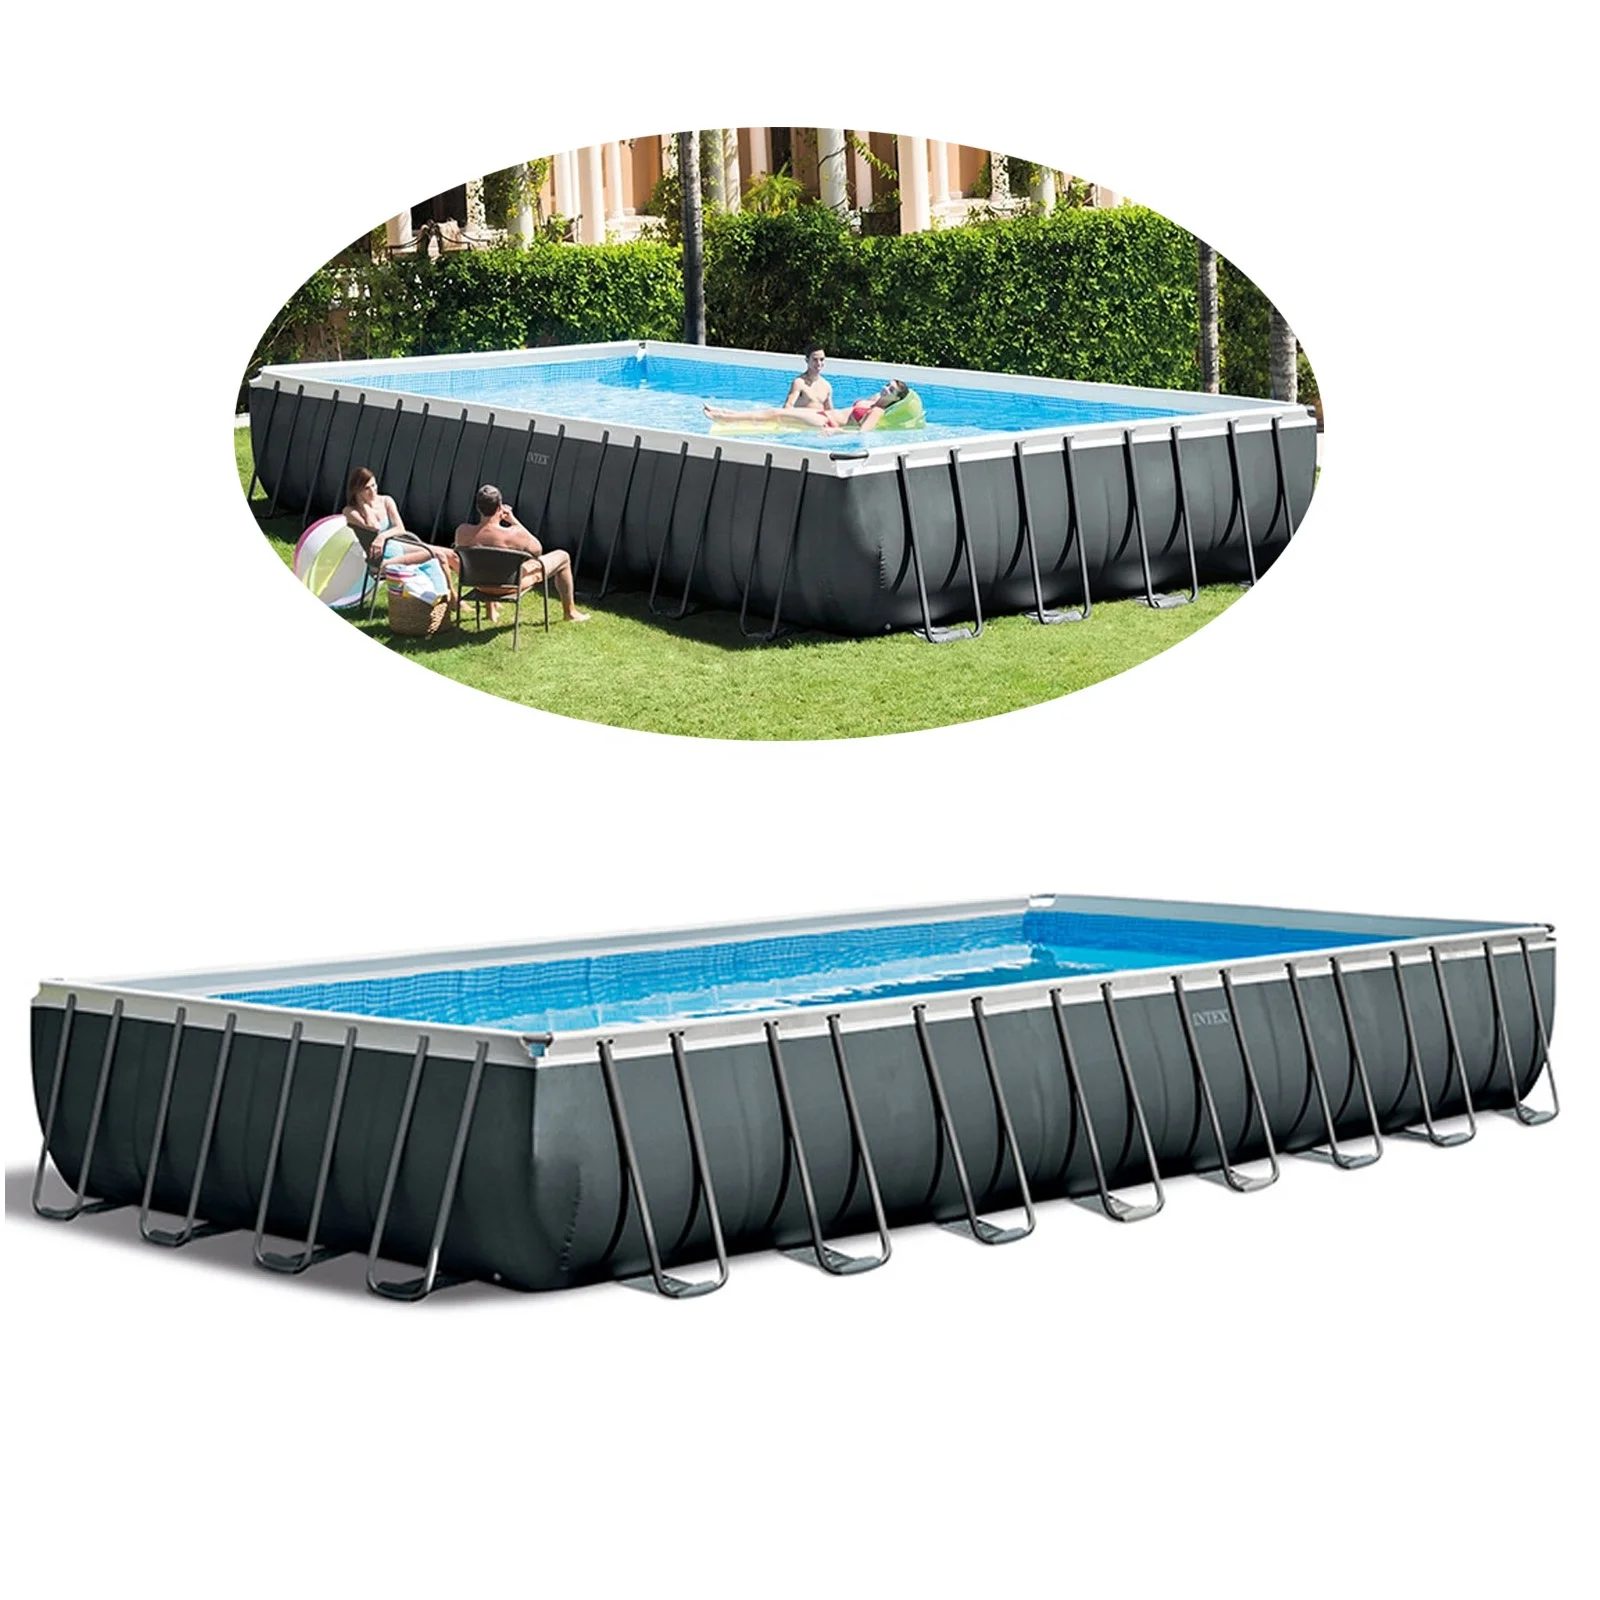 

Intex 26378 26374 32FT 9.75X4.88X1.32m Large Rectangular Steel Frame Swimming Pool Set, As photo